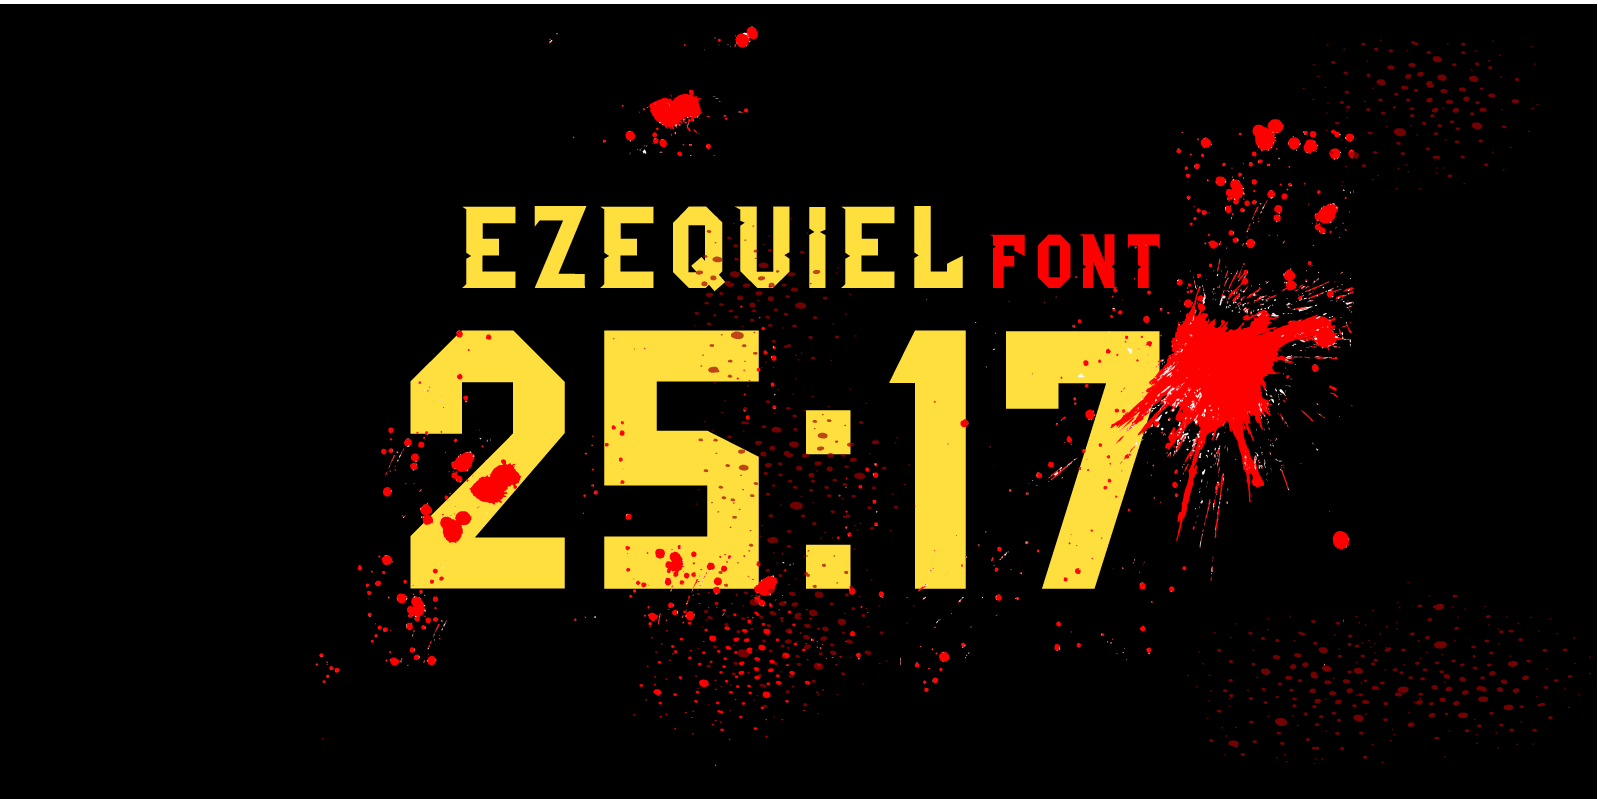 Ezequiel 25:17 Free Font - sans-serif